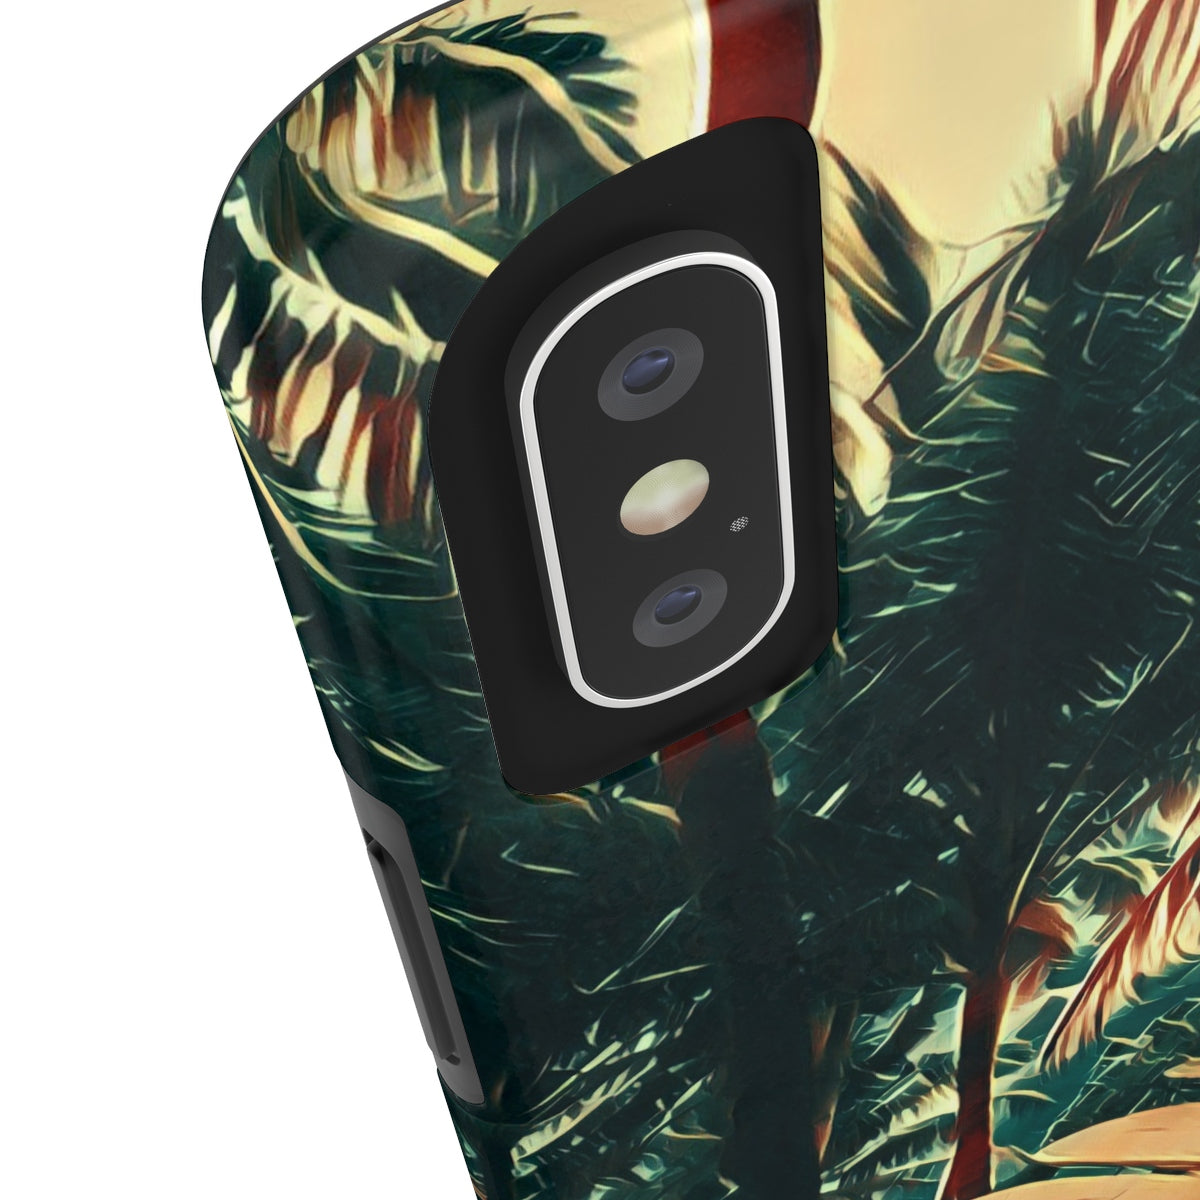 Oahu Boards — Case Mate Tough Phone Cases